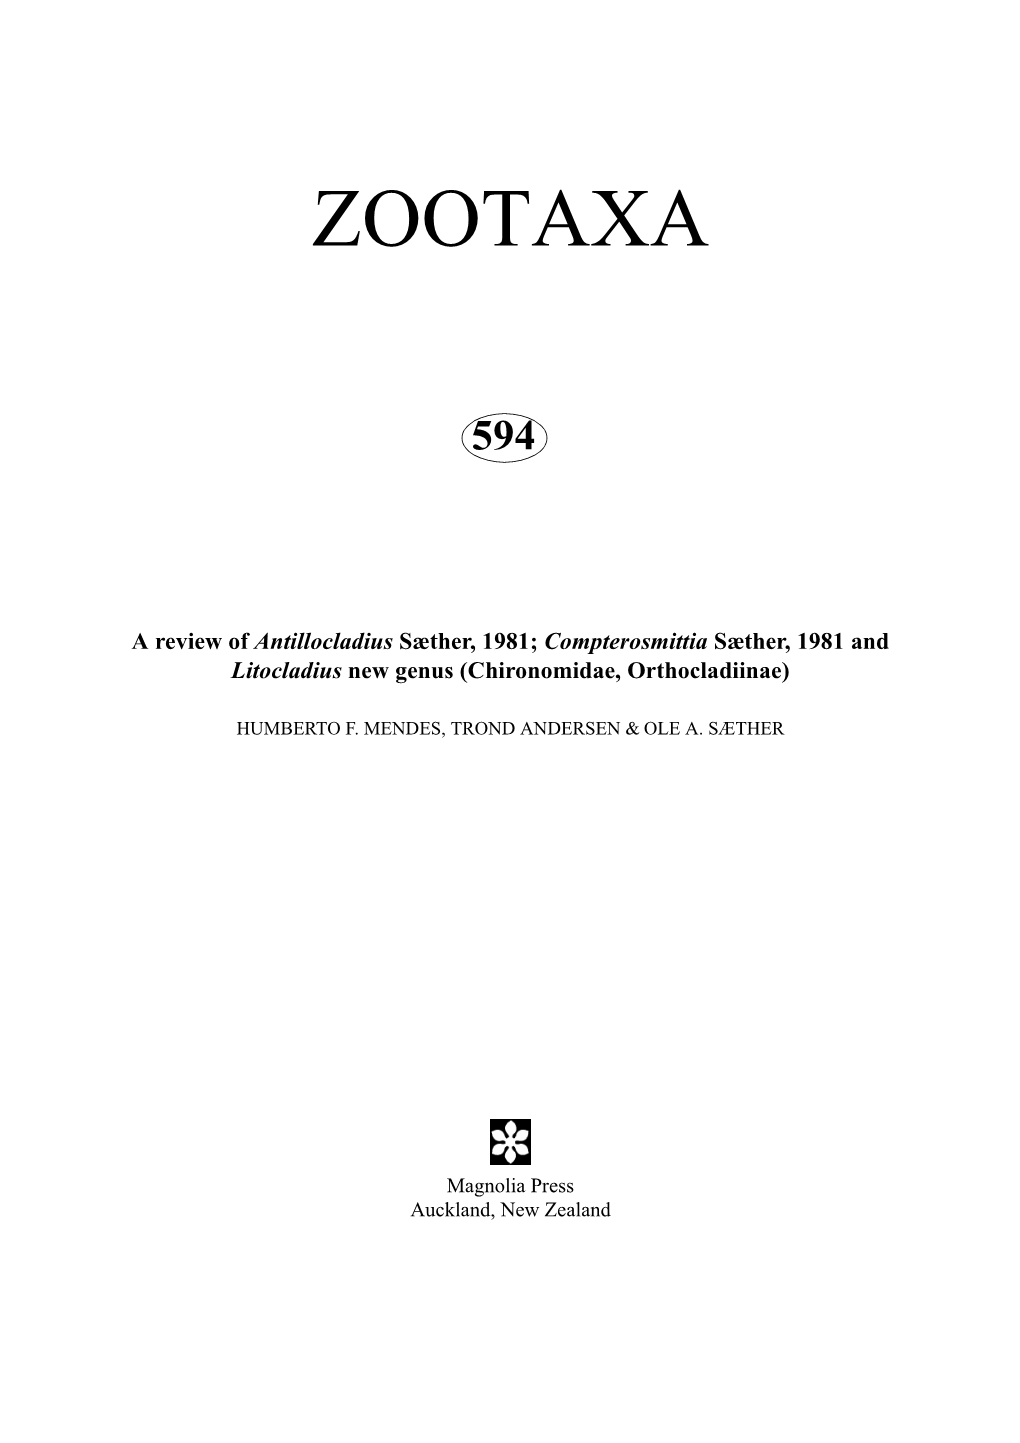 Zootaxa, Diptera, Chironomidae